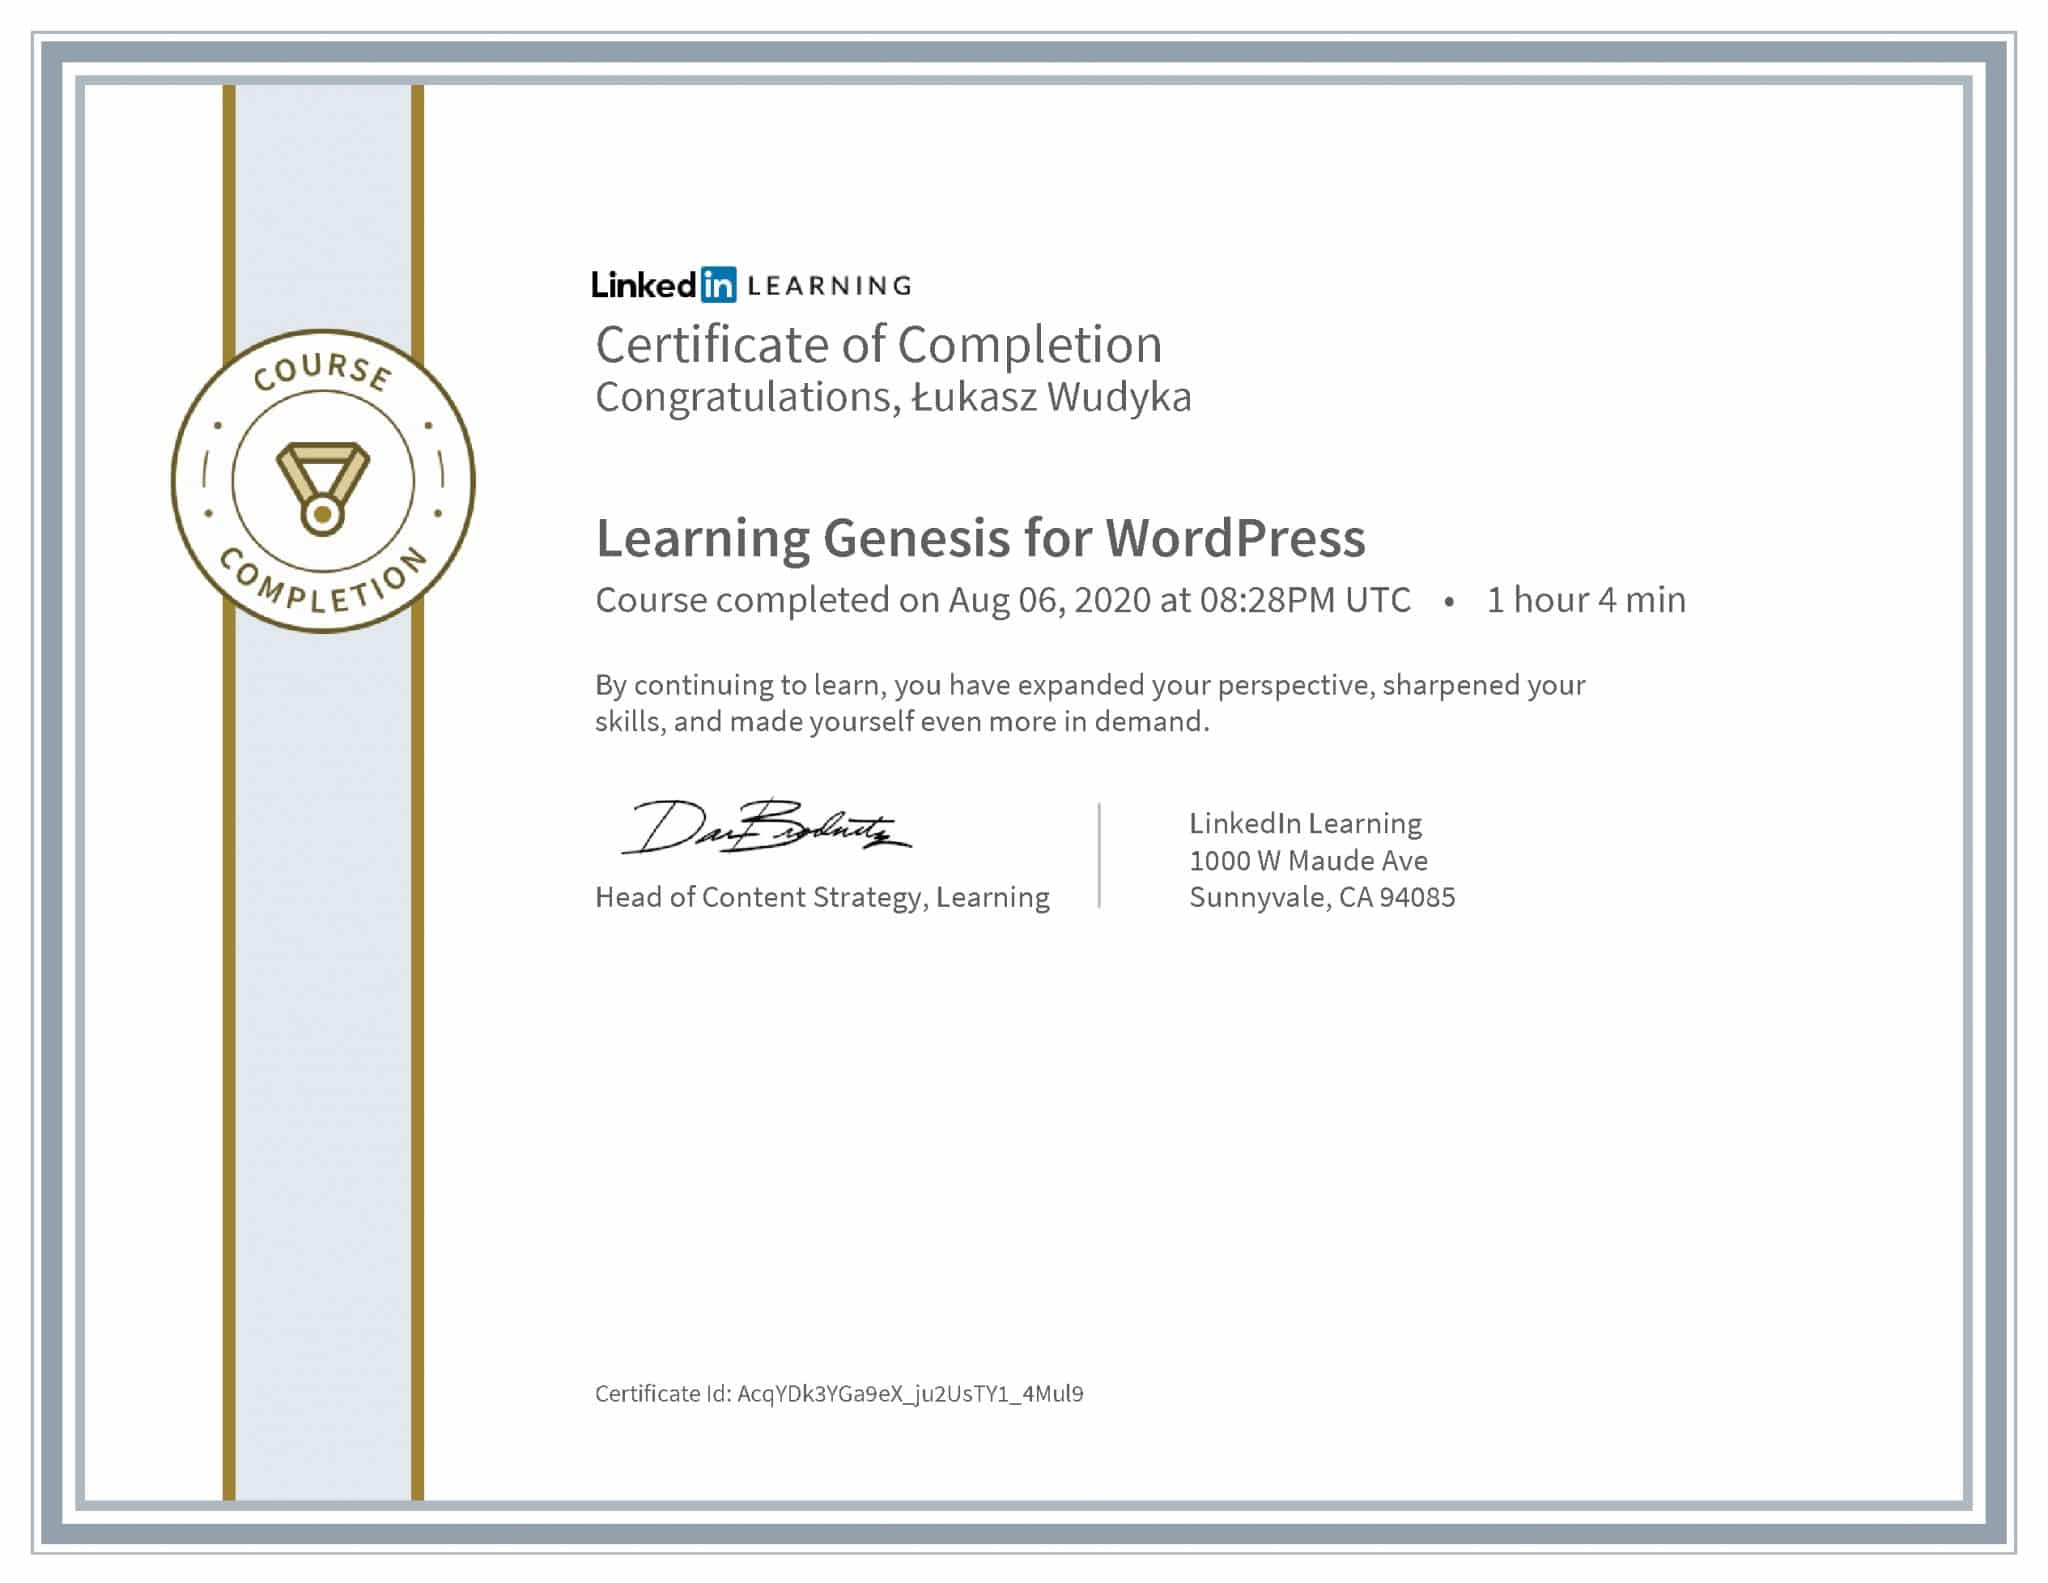 Łukasz Wudyka certyfikat LinkedIn Learning Genesis for WordPress